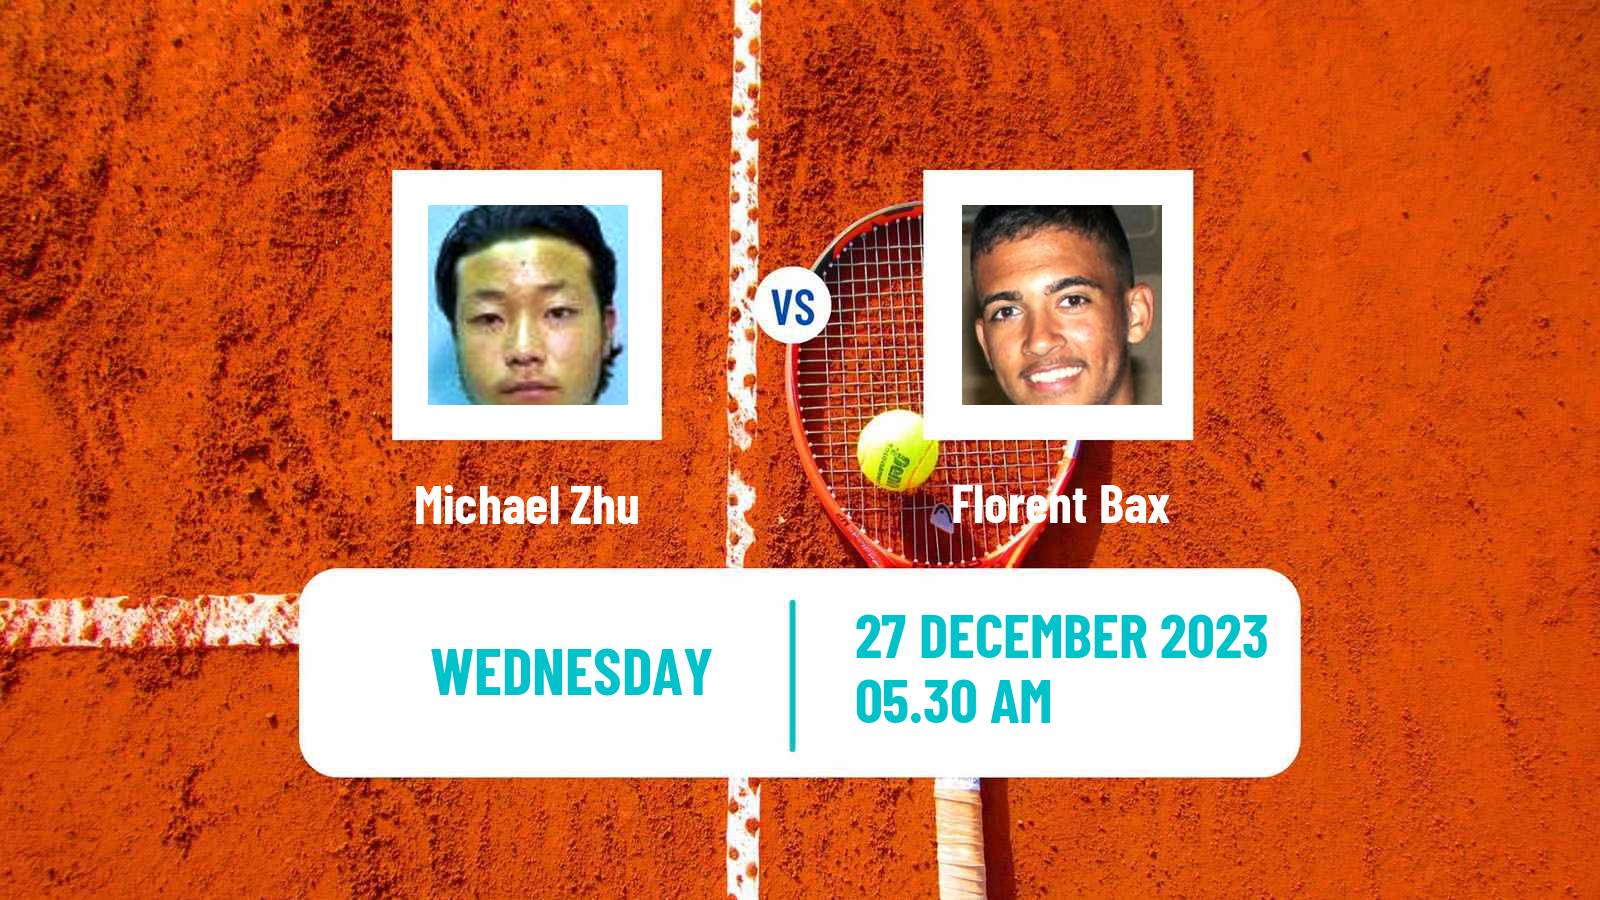 Tennis ITF M15 Monastir 52 Men Michael Zhu - Florent Bax